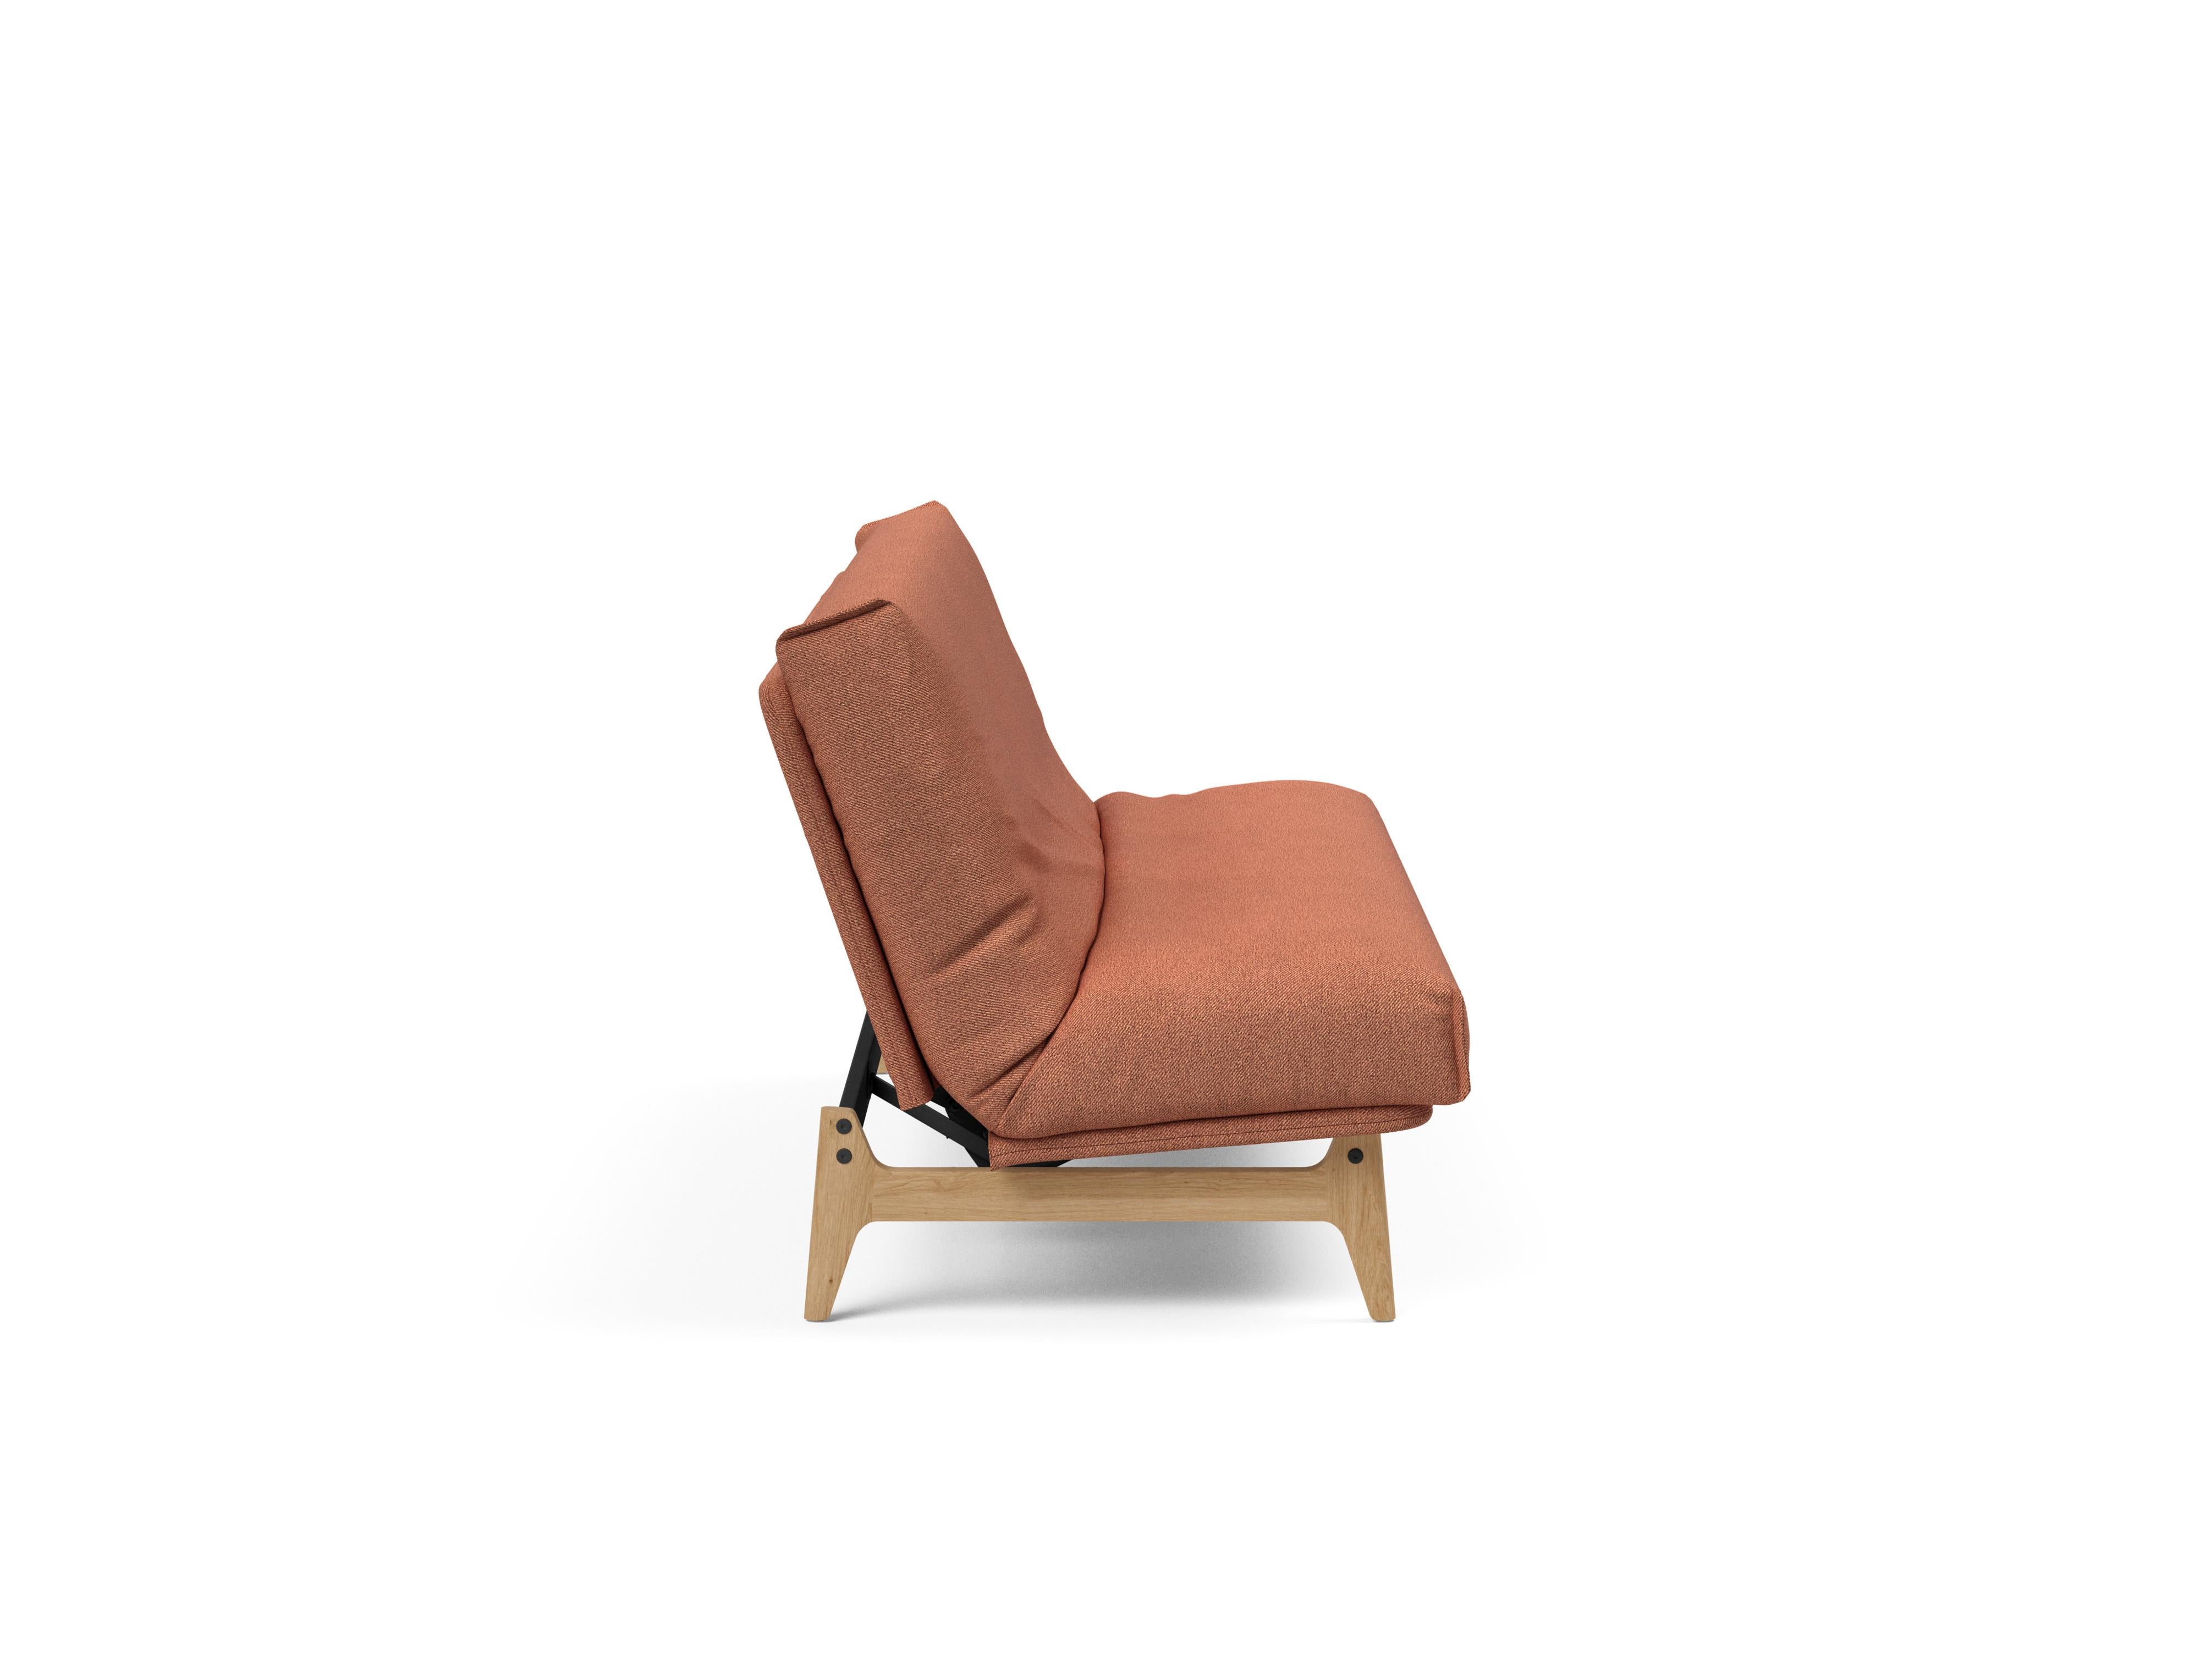 Aslak 120 Bettsofa Nordic Cover in Rust 301 präsentiert im Onlineshop von KAQTU Design AG. Bettsofa ist von Innovation Living